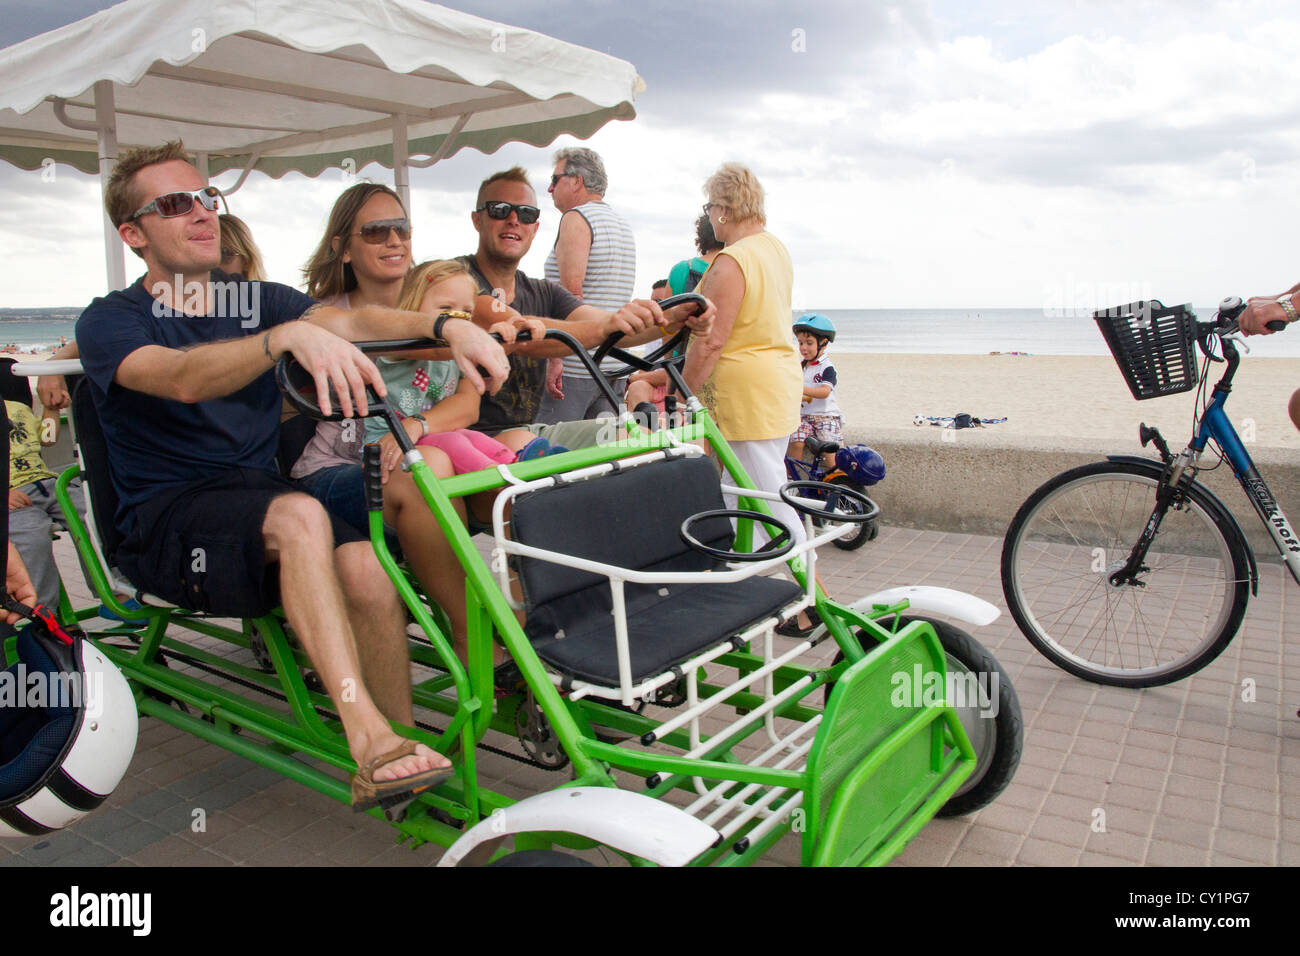 Deutsche Touristen mit dem vier-Rad Fahrrad auf Promenade von Arenal  Mallorca Spanien Stockfotografie - Alamy